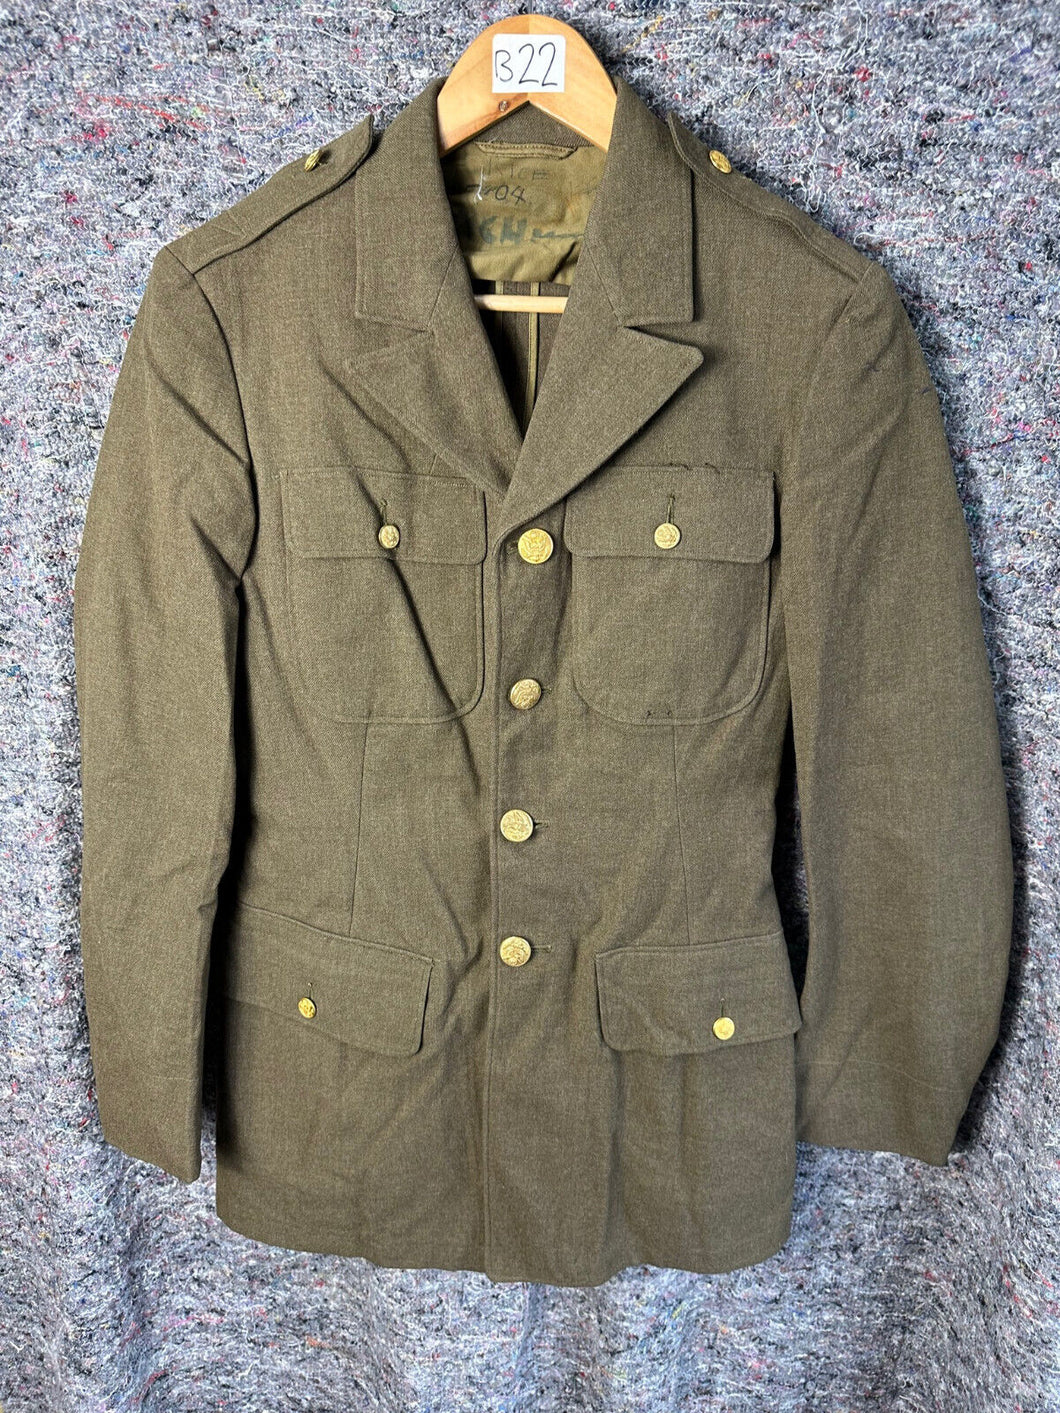 Original US Army WW2 Class A Uniform Jacket - 36